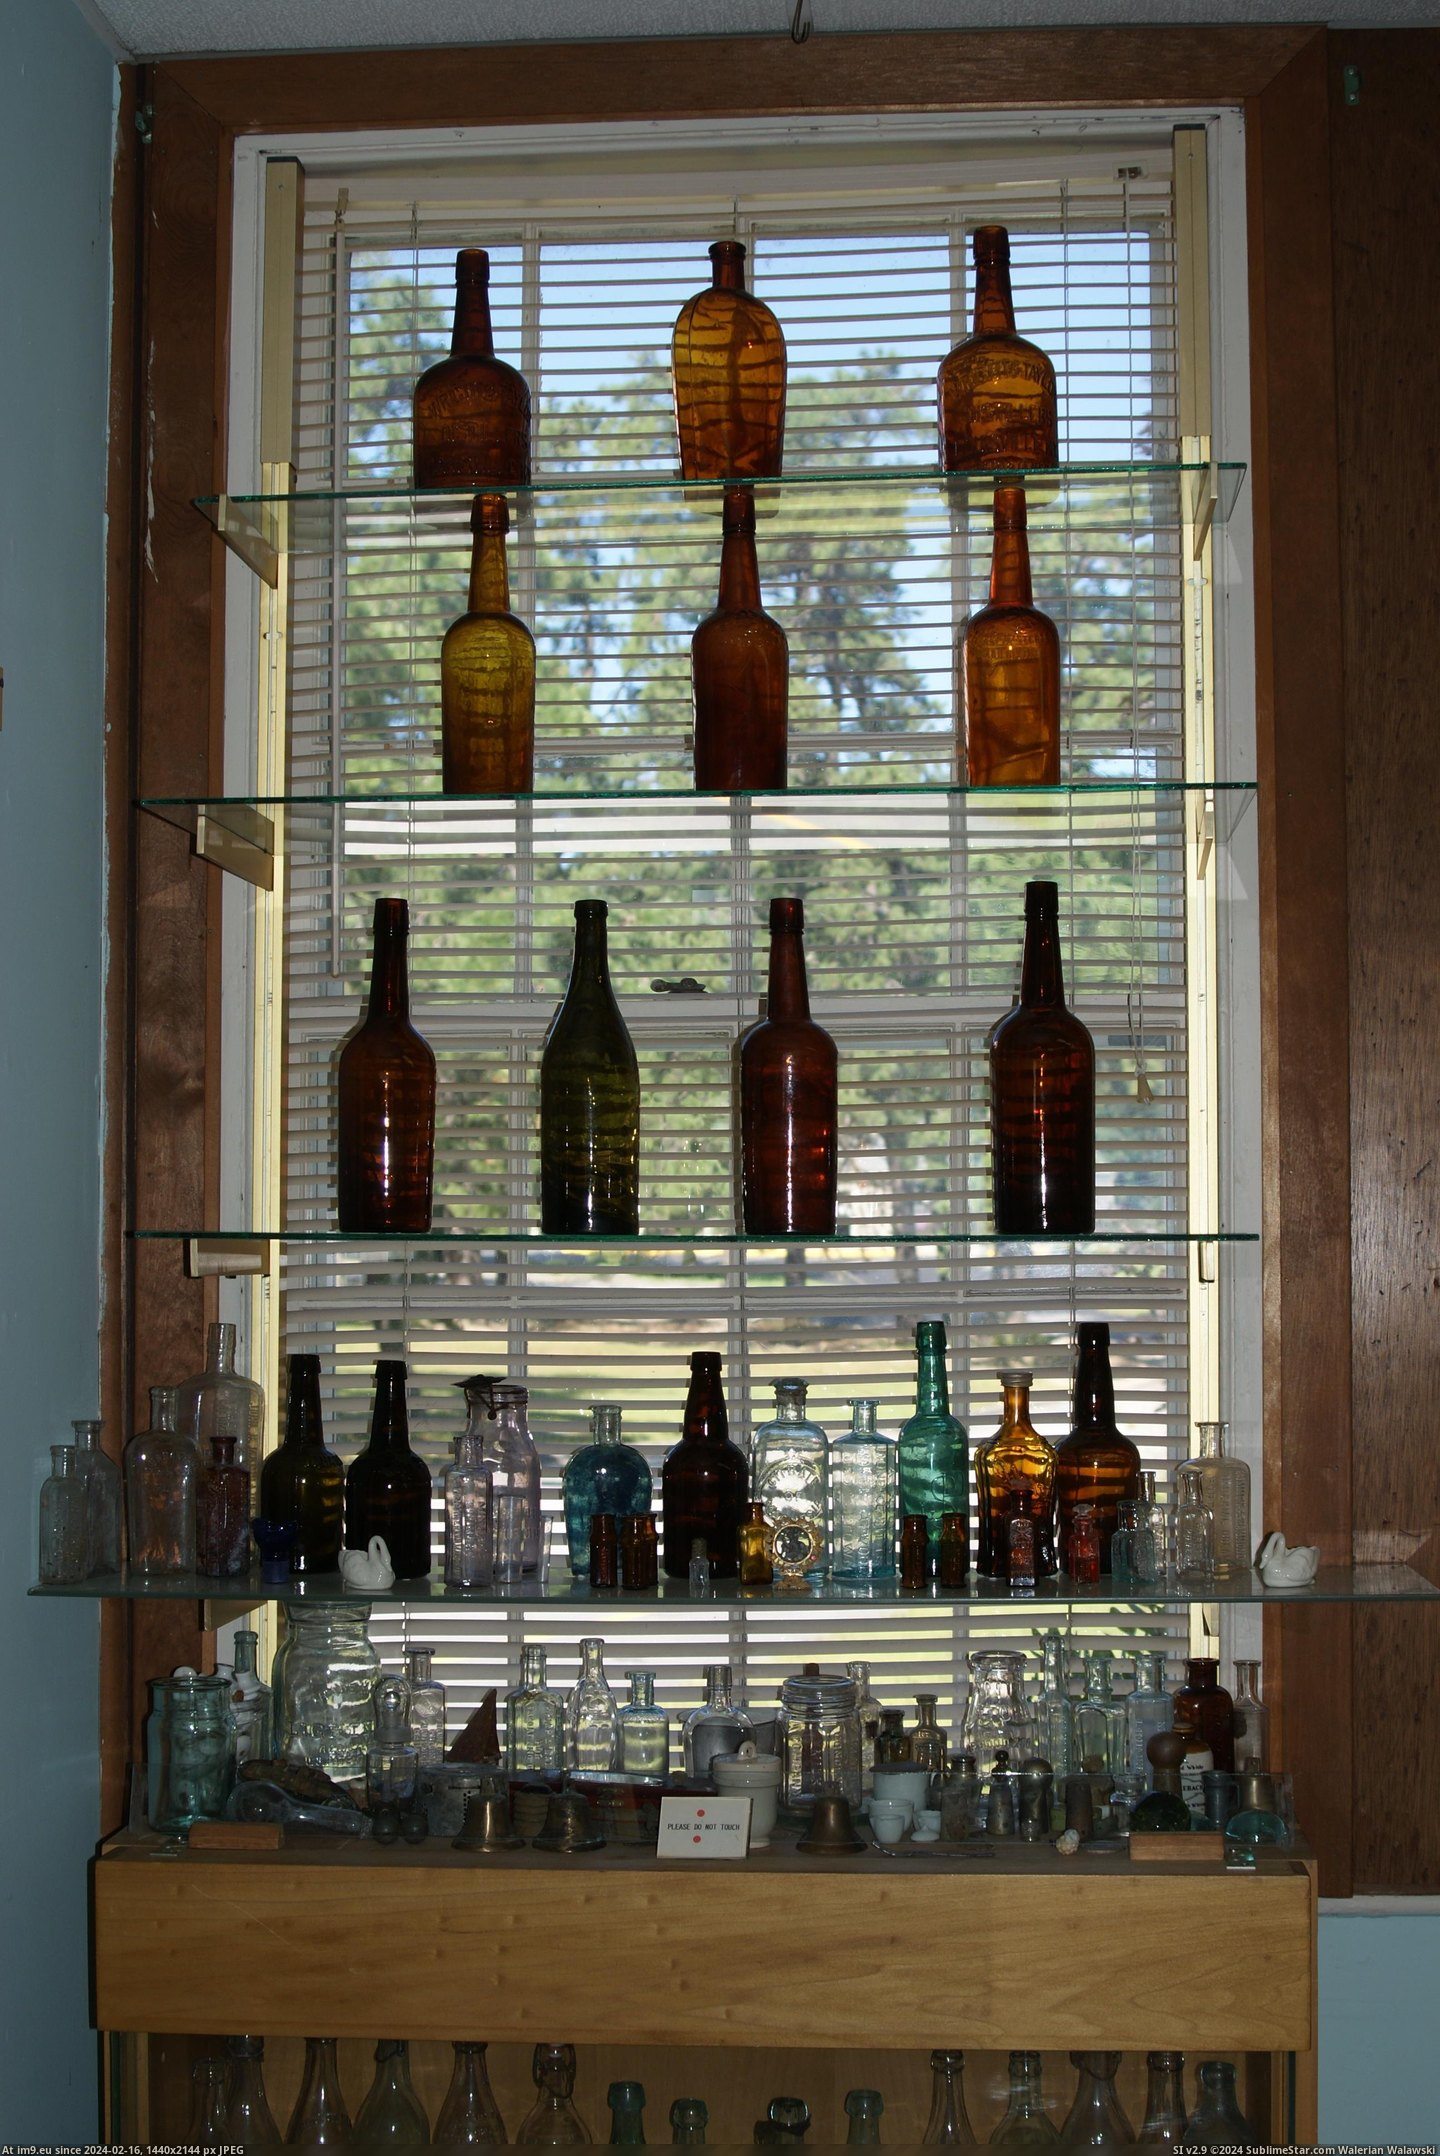 #Museum #Maine #Naples #Bottle MAINE BOTTLE MUSEUM NAPLES (9) Pic. (Изображение из альбом MAINE BOTTLE MUSEUM))